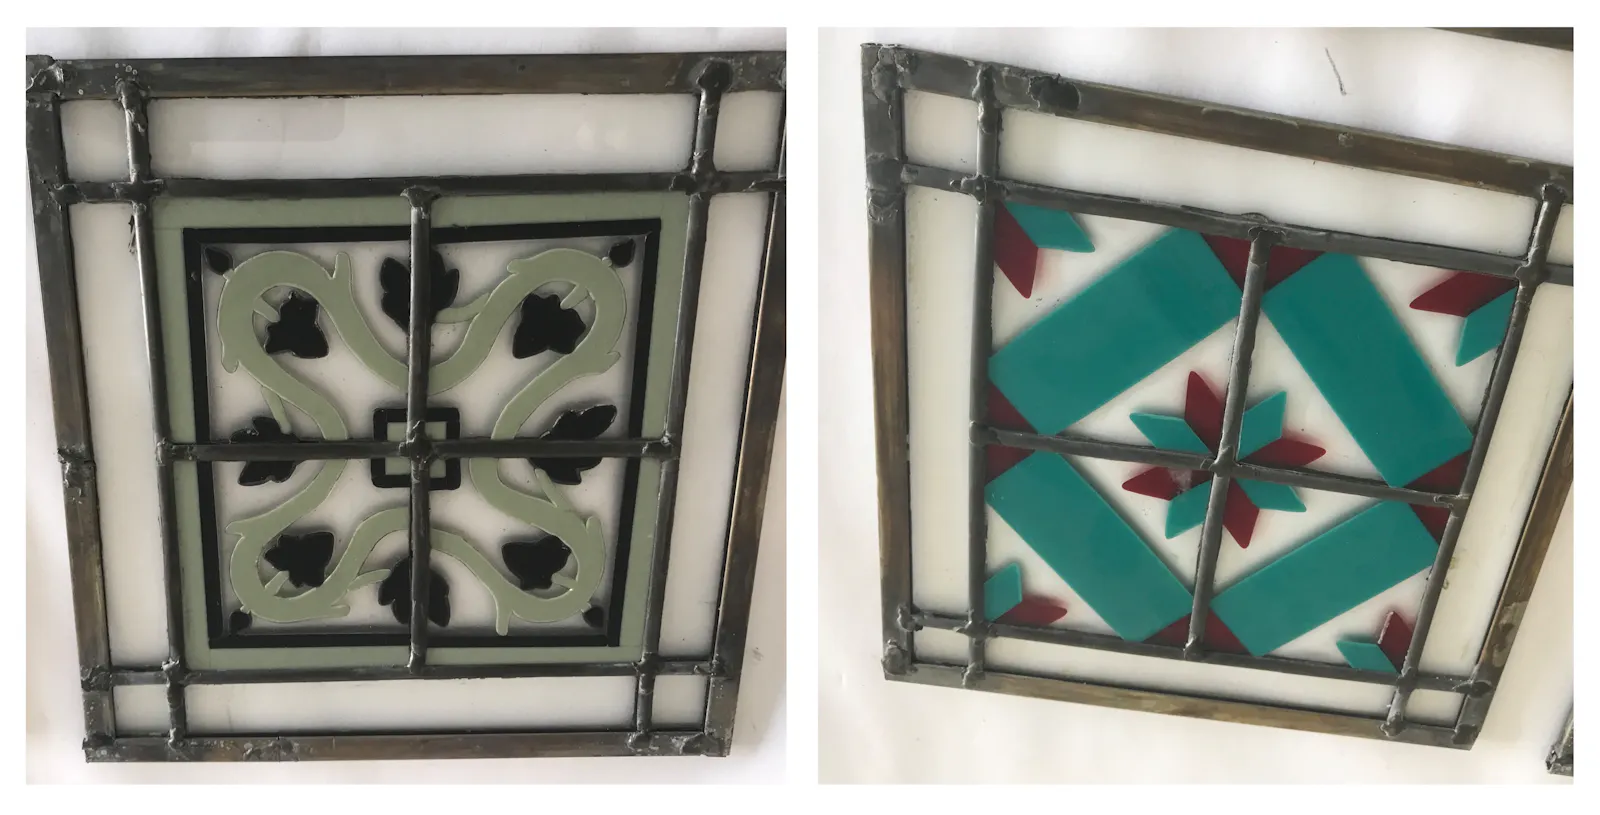 Quadratische Bleiglaselemente in Fliesengröße mit floralen Motiven. Links blassgrün und schwarz. Rechts türkis und rot.